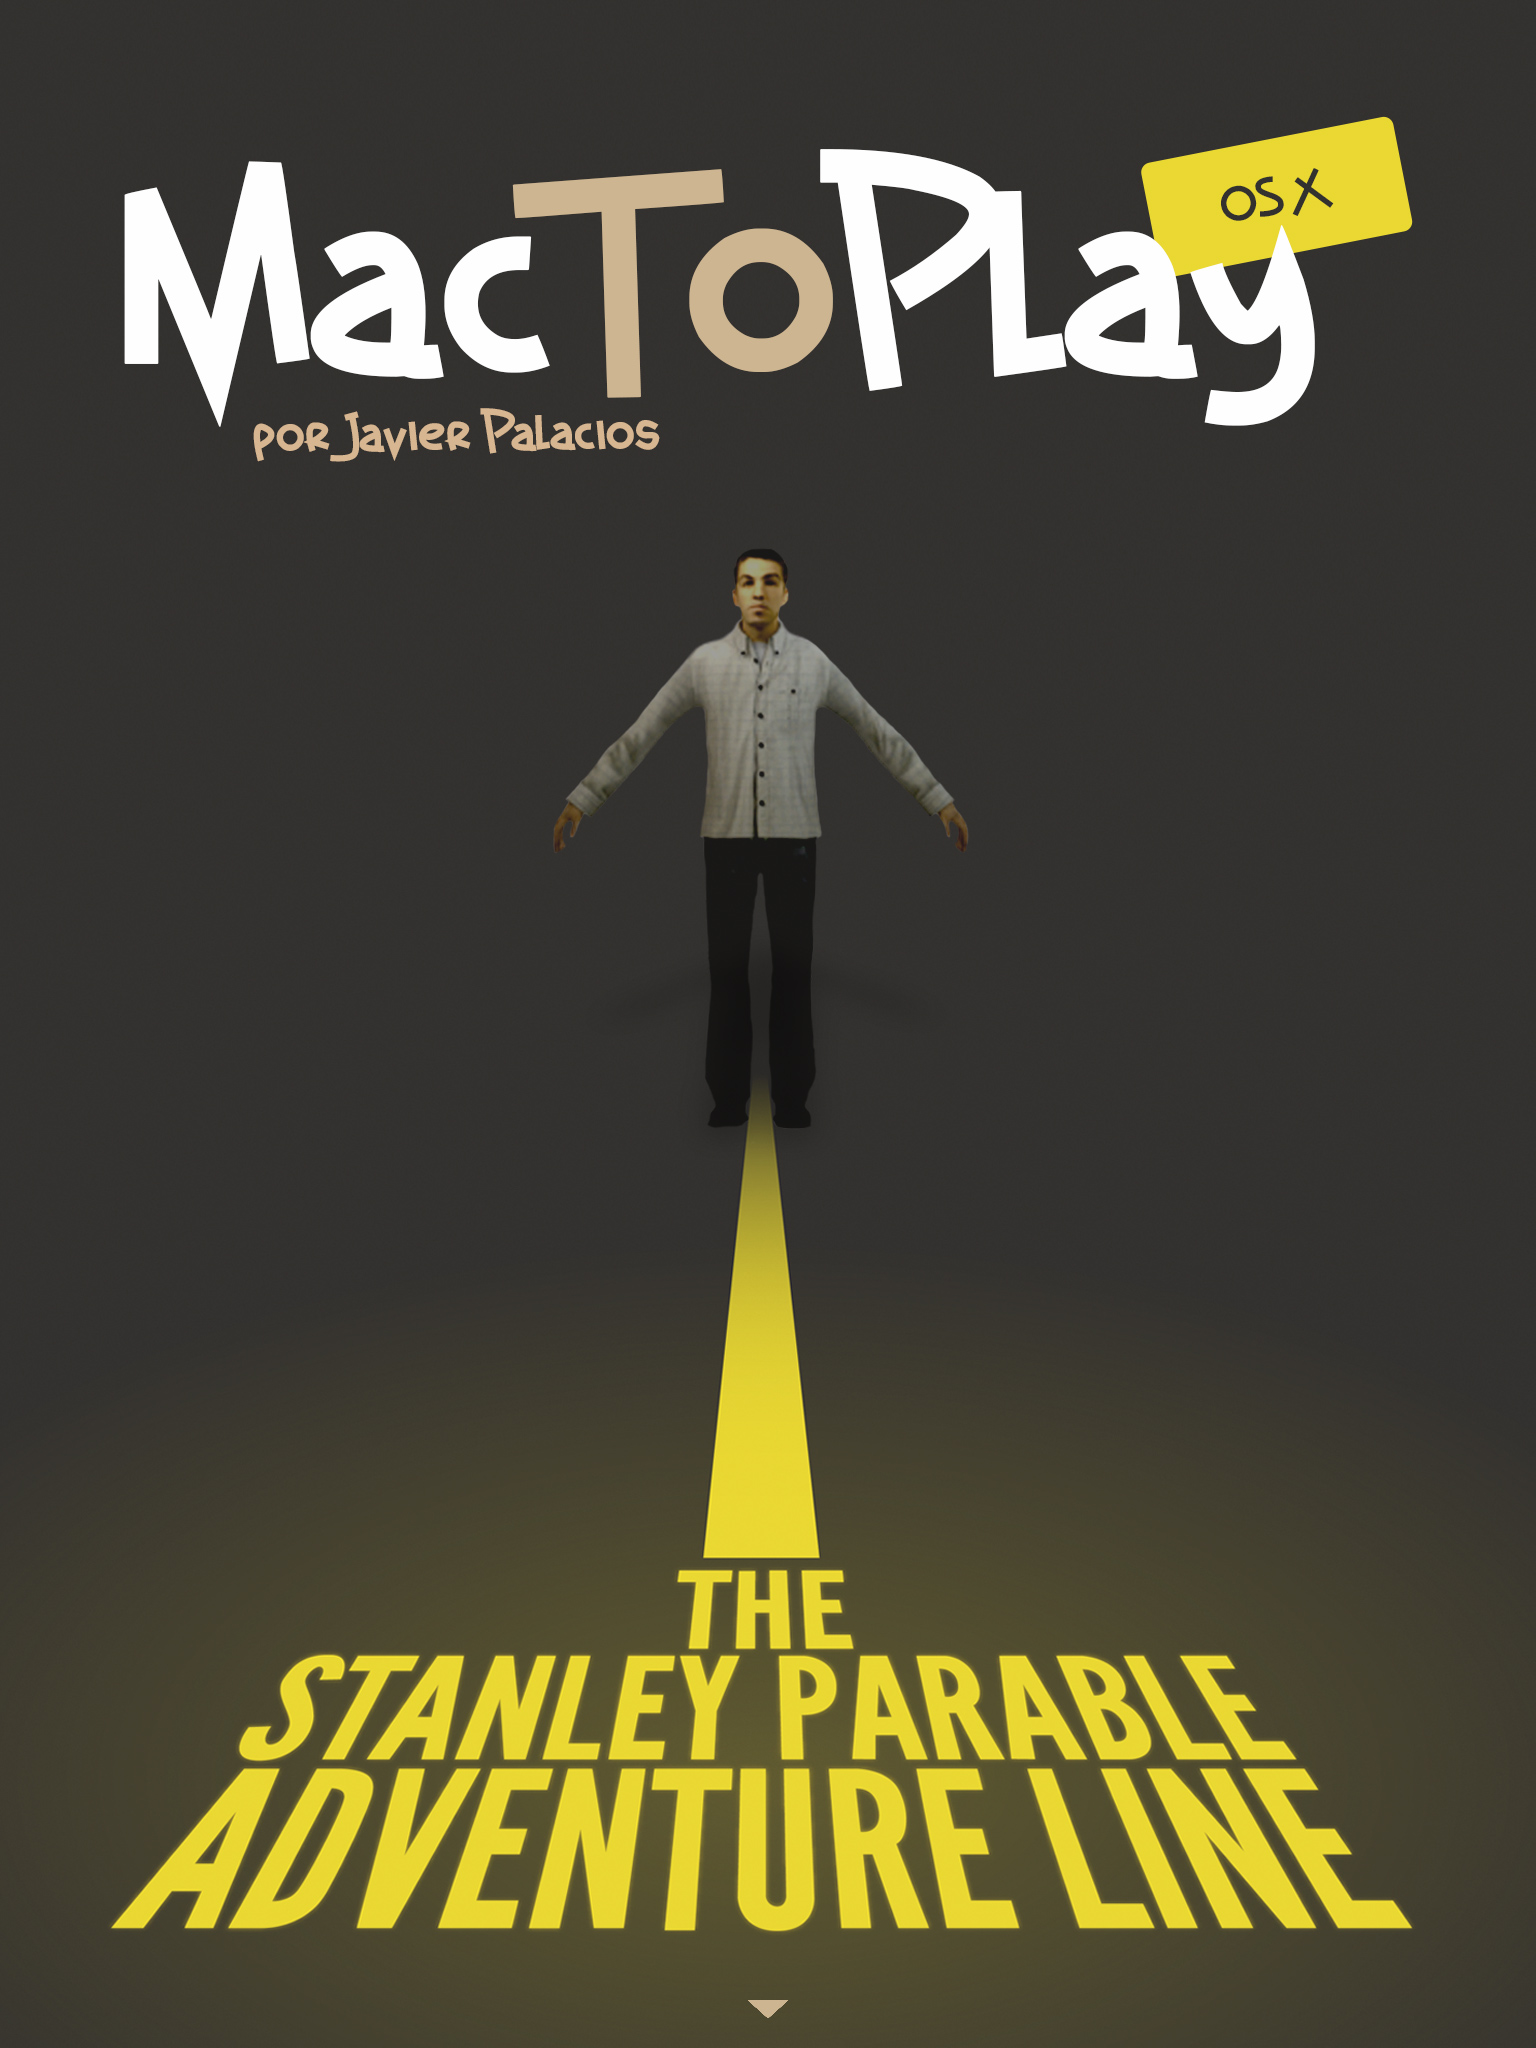 mactoplay os x: the stanley parable. Continúa el artículo abajo